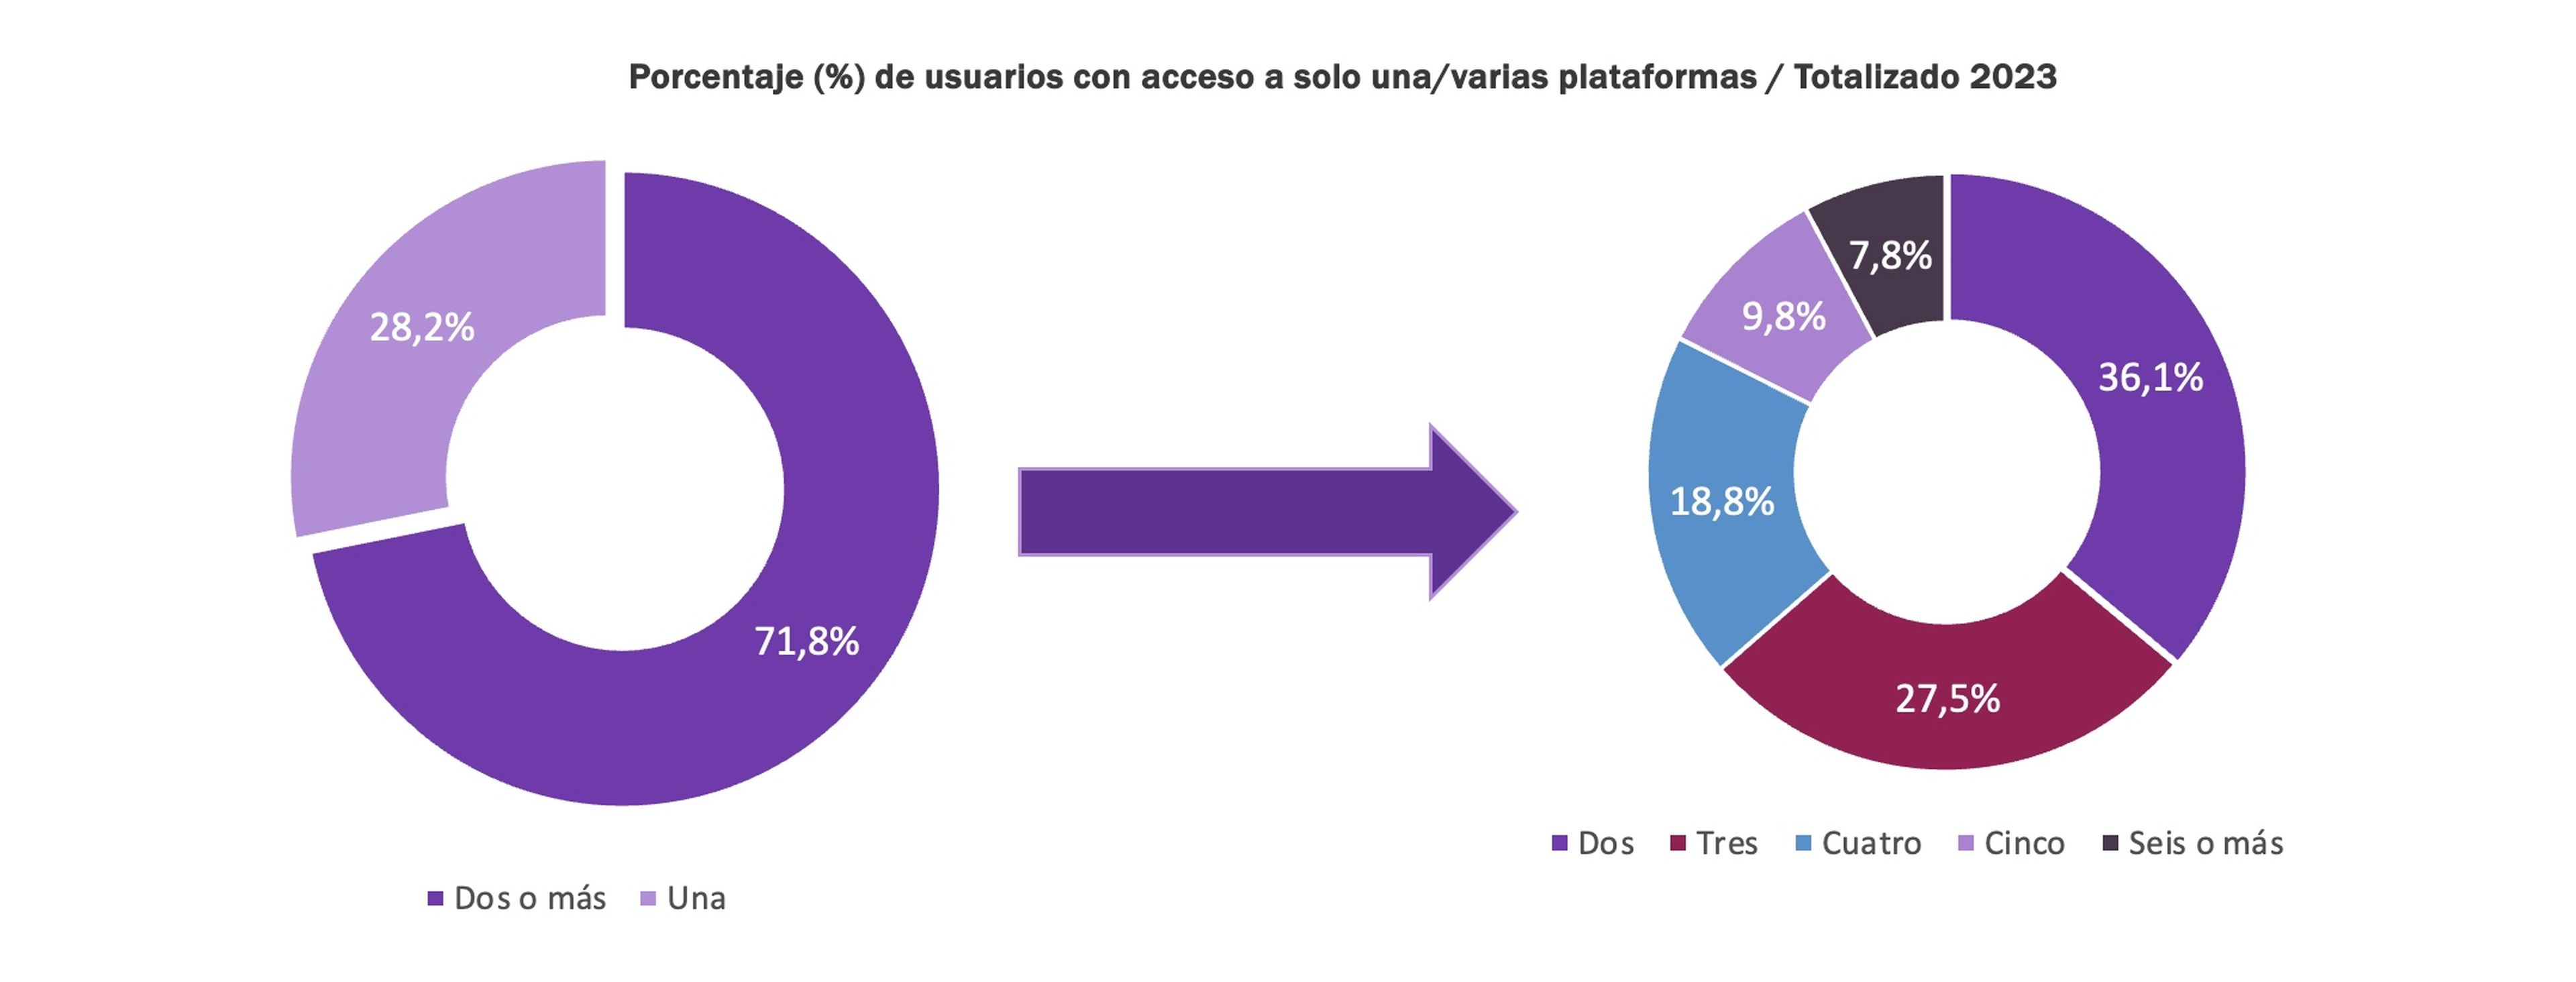 Porcentaje de usuarios con acceso a solo una o varias plataformas durante 2023.